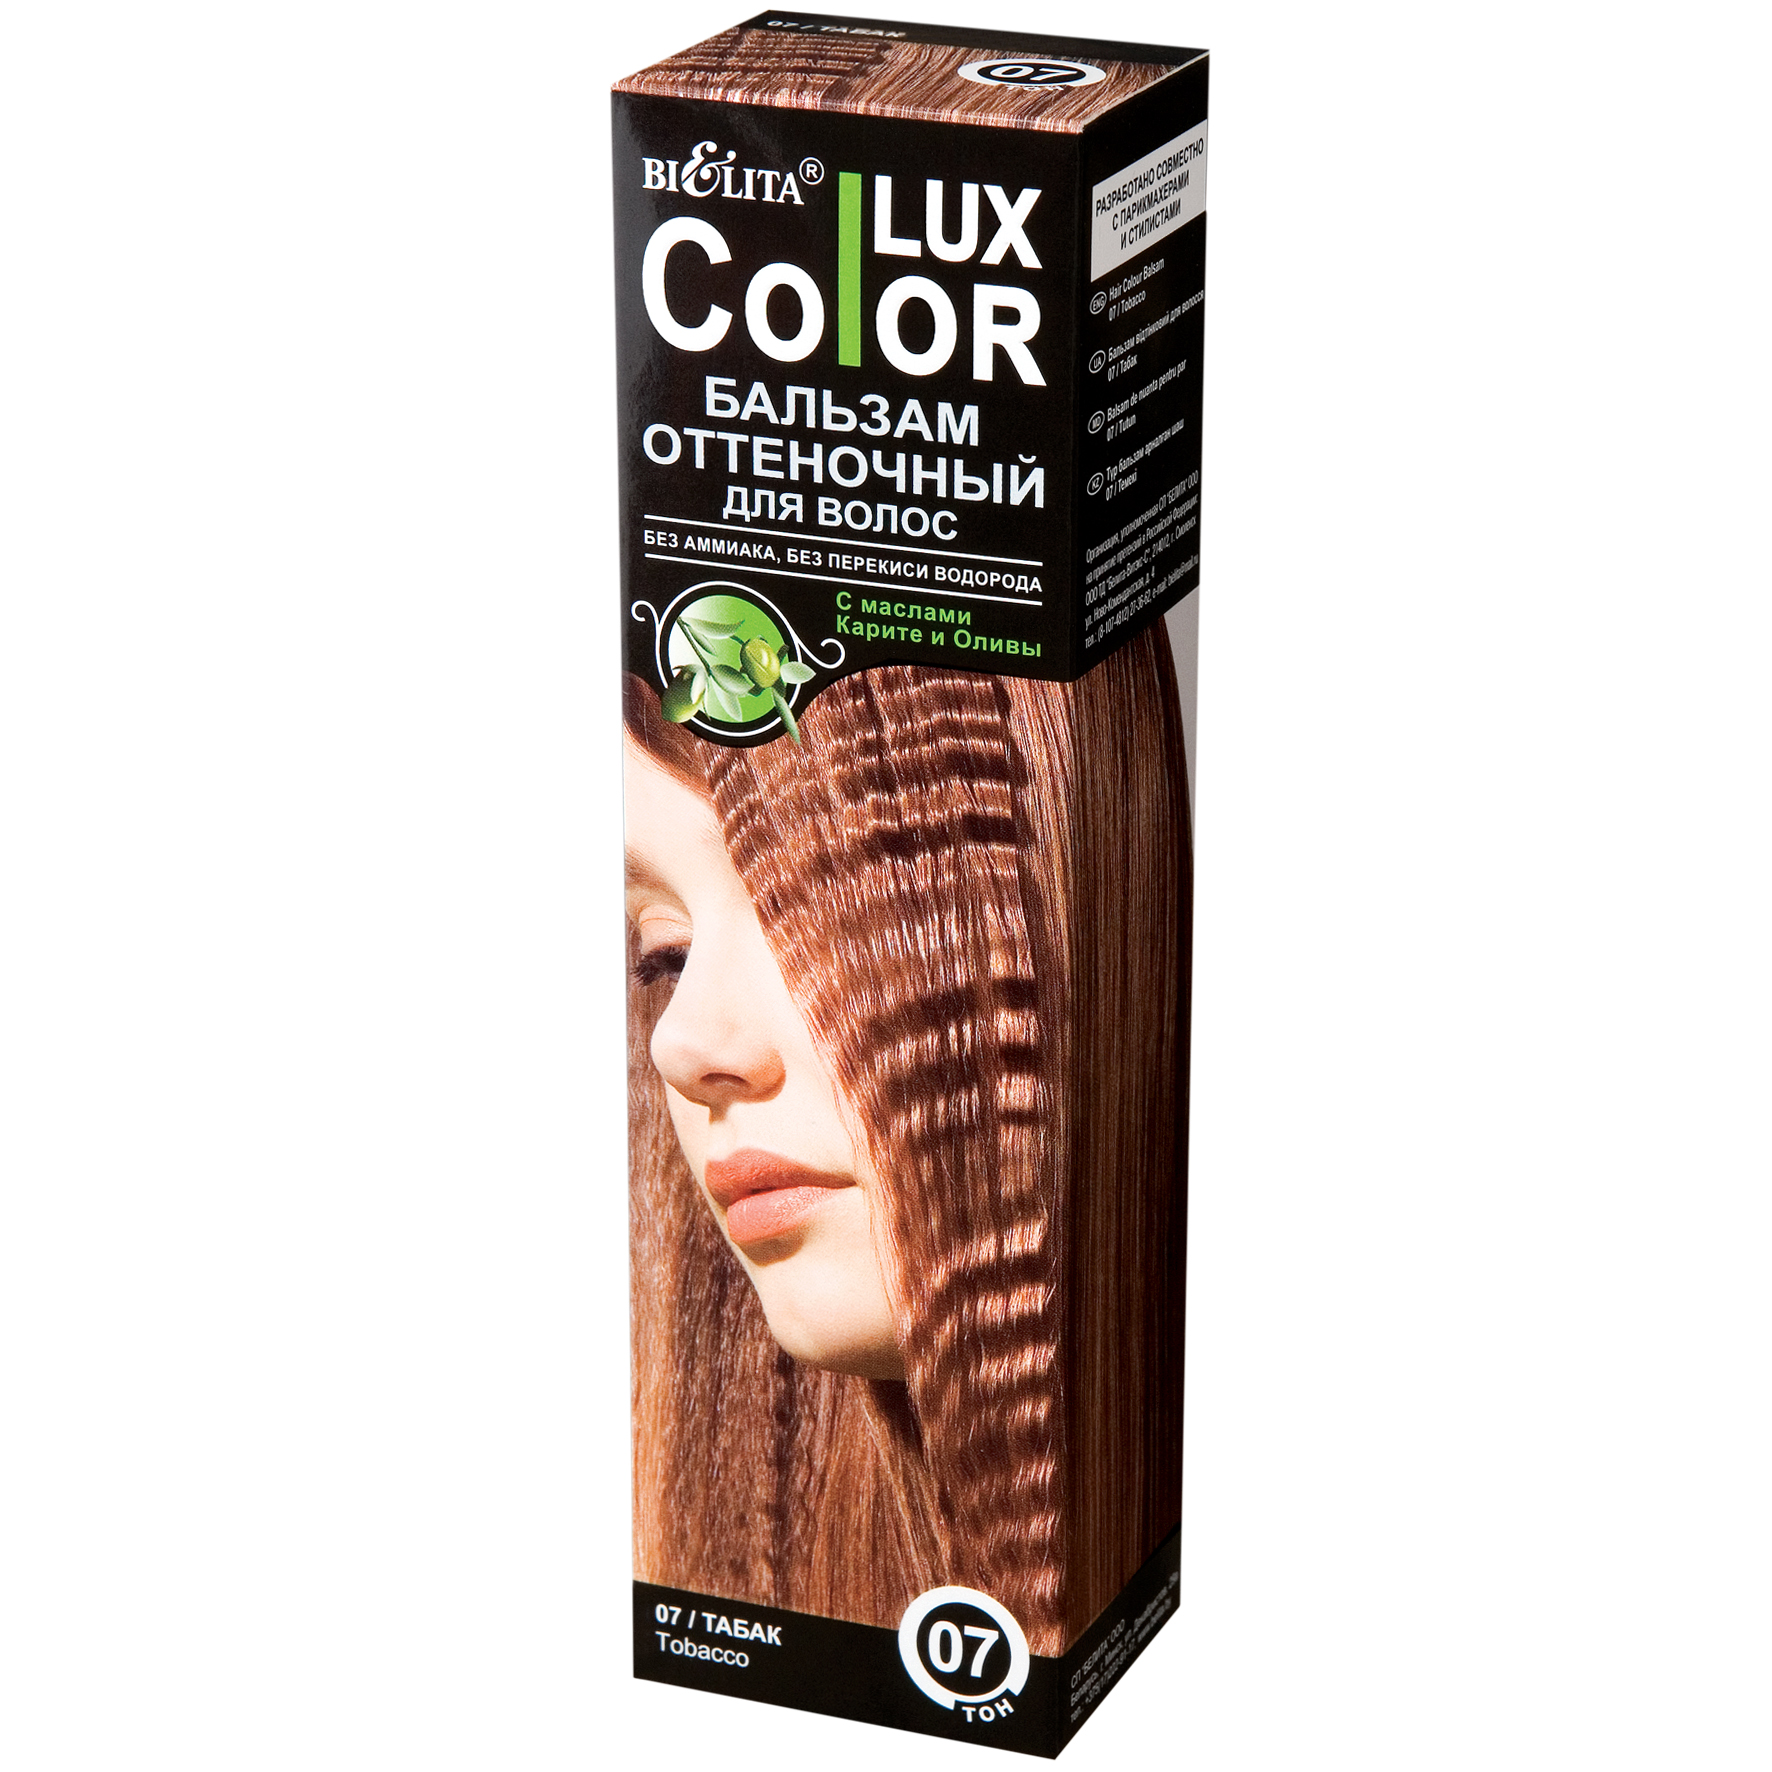 Оттеночный бальзам белита color. Оттеночный бальзам для волос "Color Lux" тон: 07, табак. Бальзам Белита Color Lux палитра. Красящий волосы бальзам Белита Color Lux. Lux Color оттеночный бальзам 01.1.